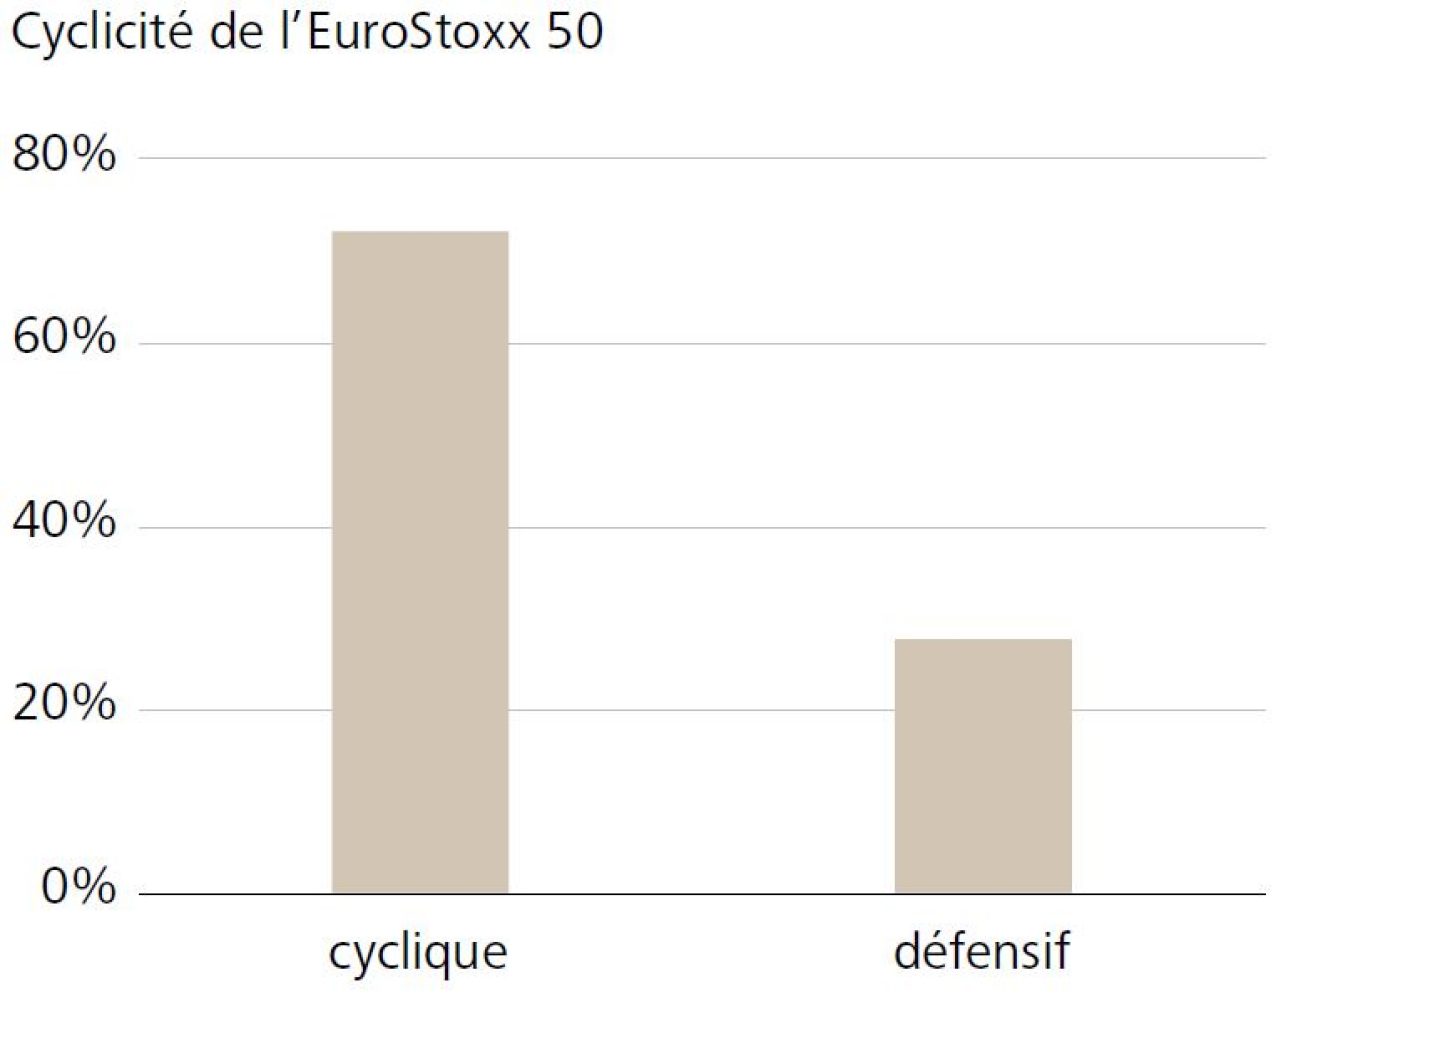 Cyclicité de l'EuroStoxx 50